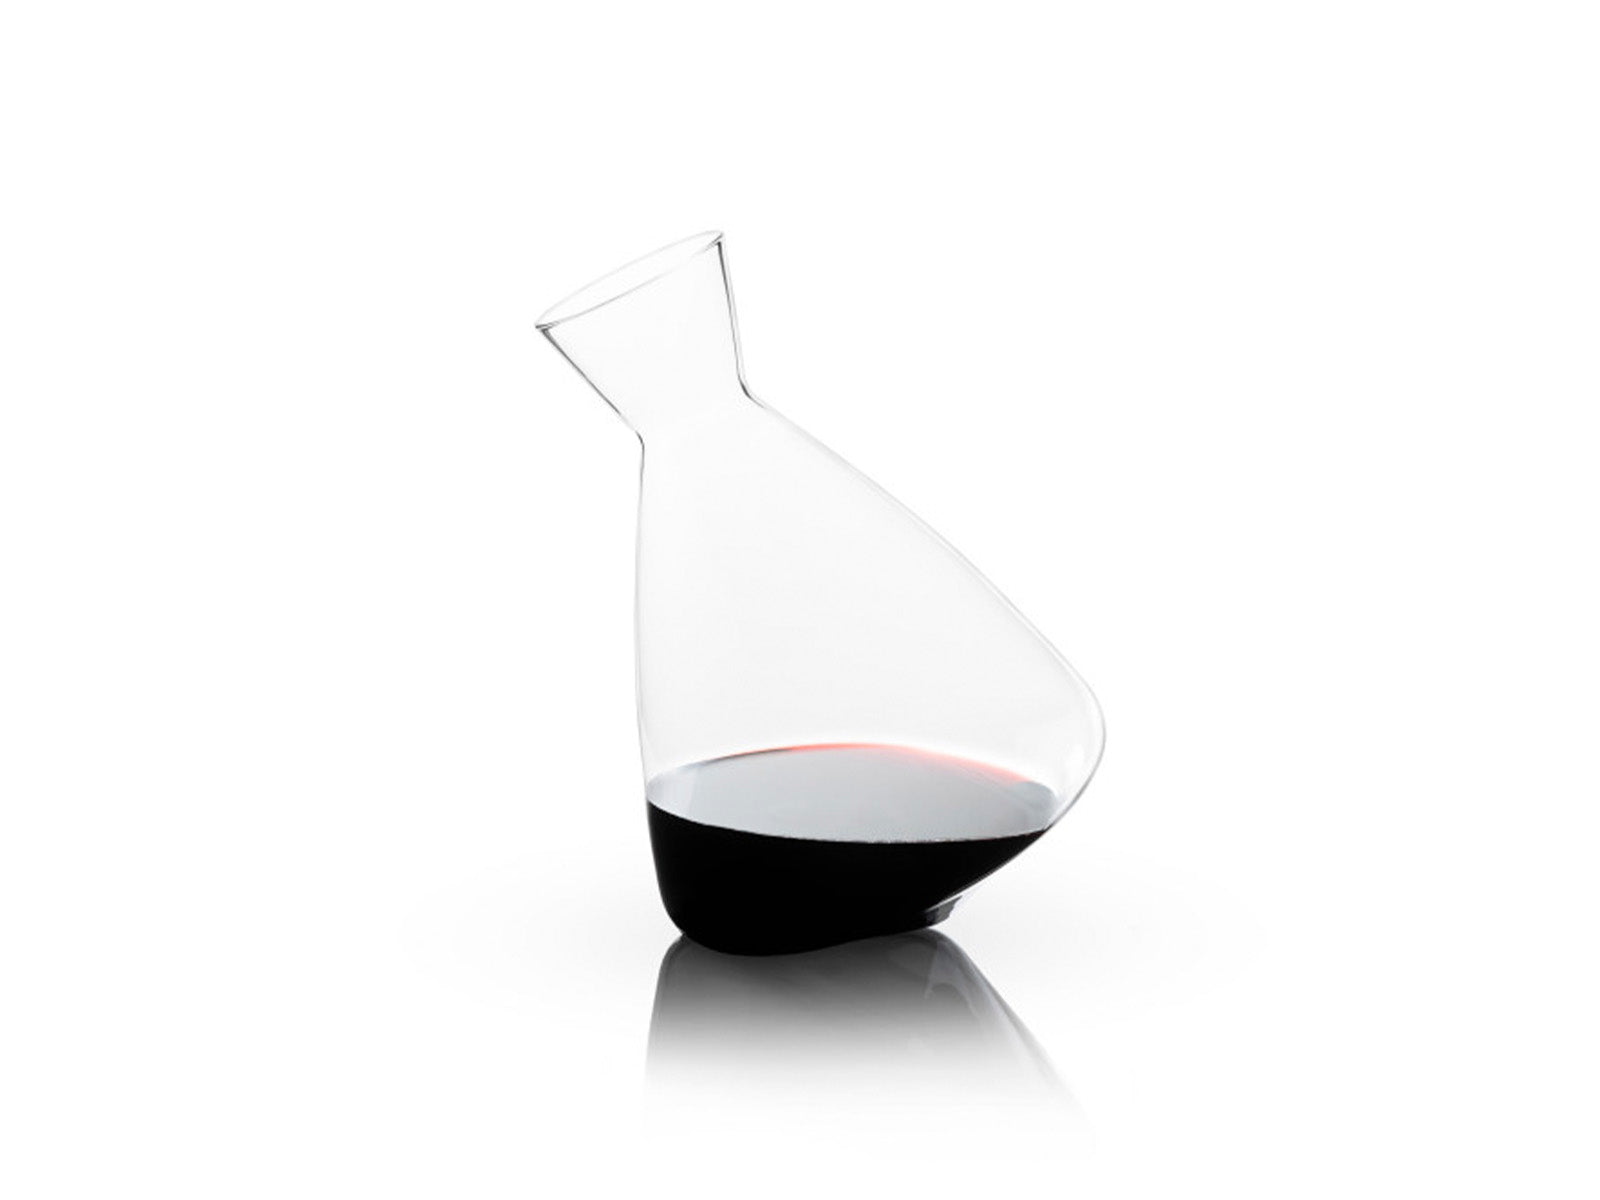 Decantador de Vino de Cristal Viski C/Transparente